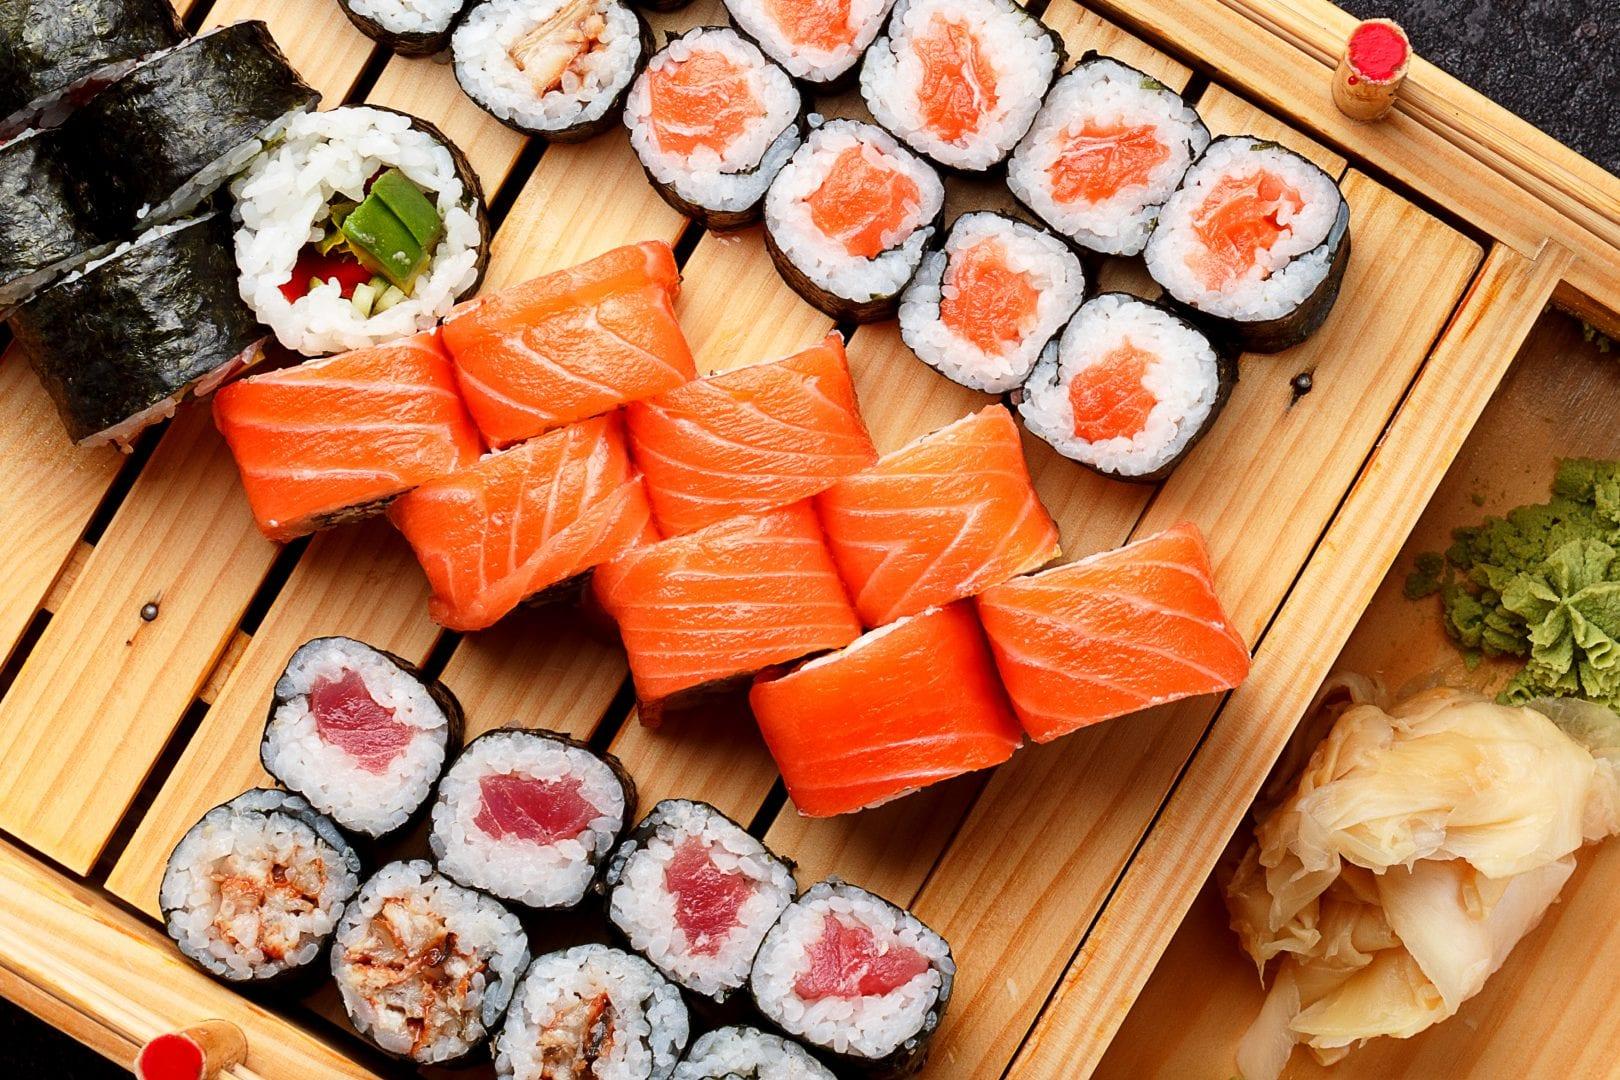 Sushi em Brasília: 12 restaurantes japoneses para conhecer